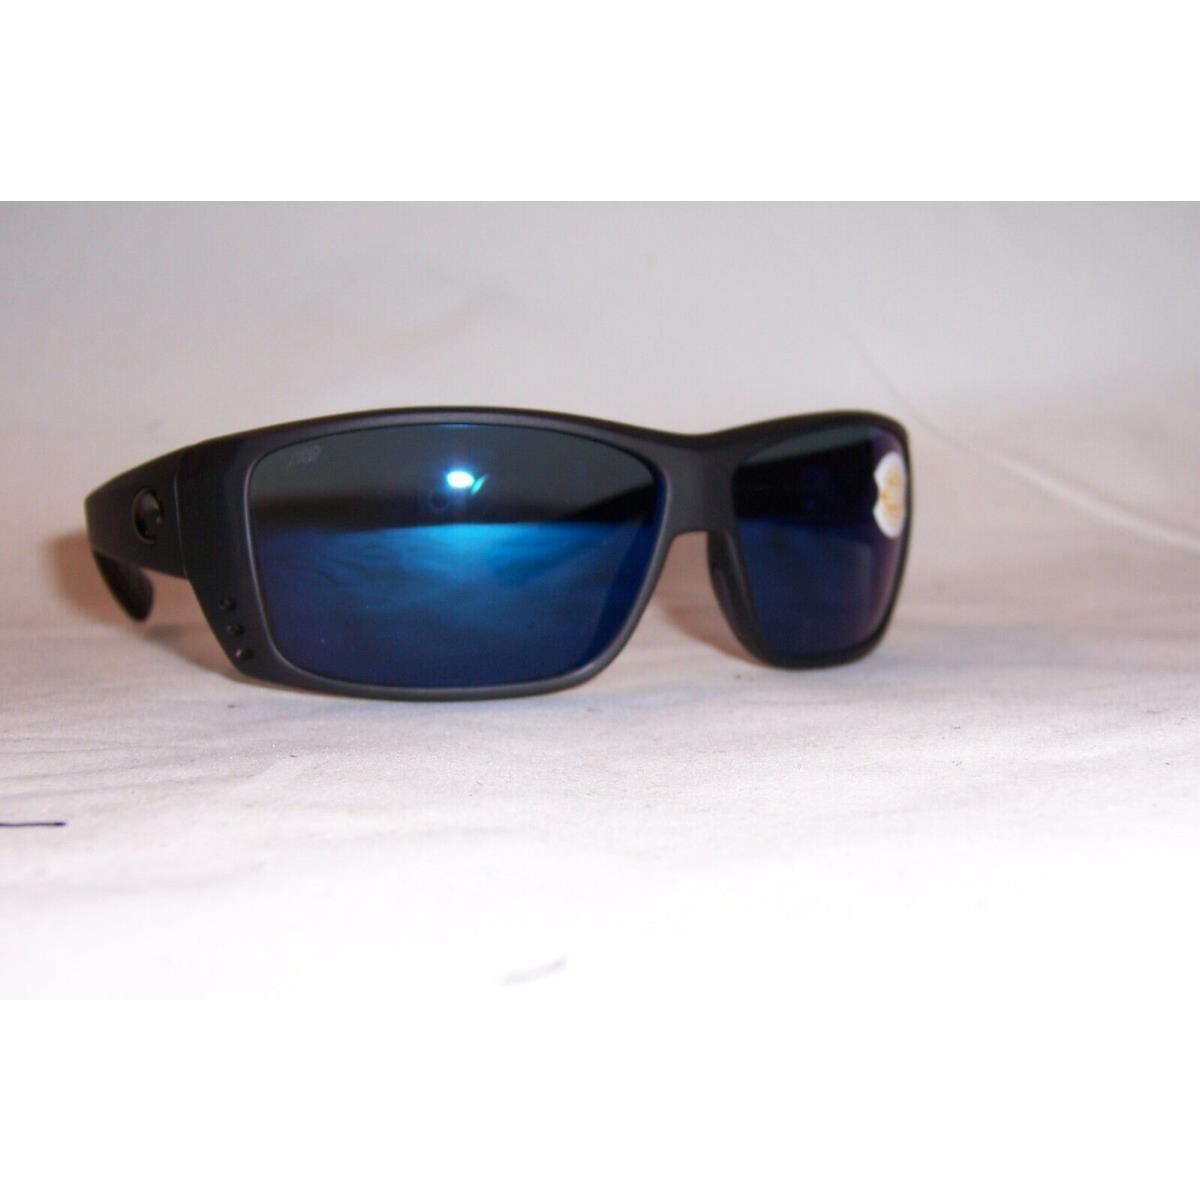 Costa Del Mar Cat Cay Sunglasses Blackout/blue Mirror Polarized 580P